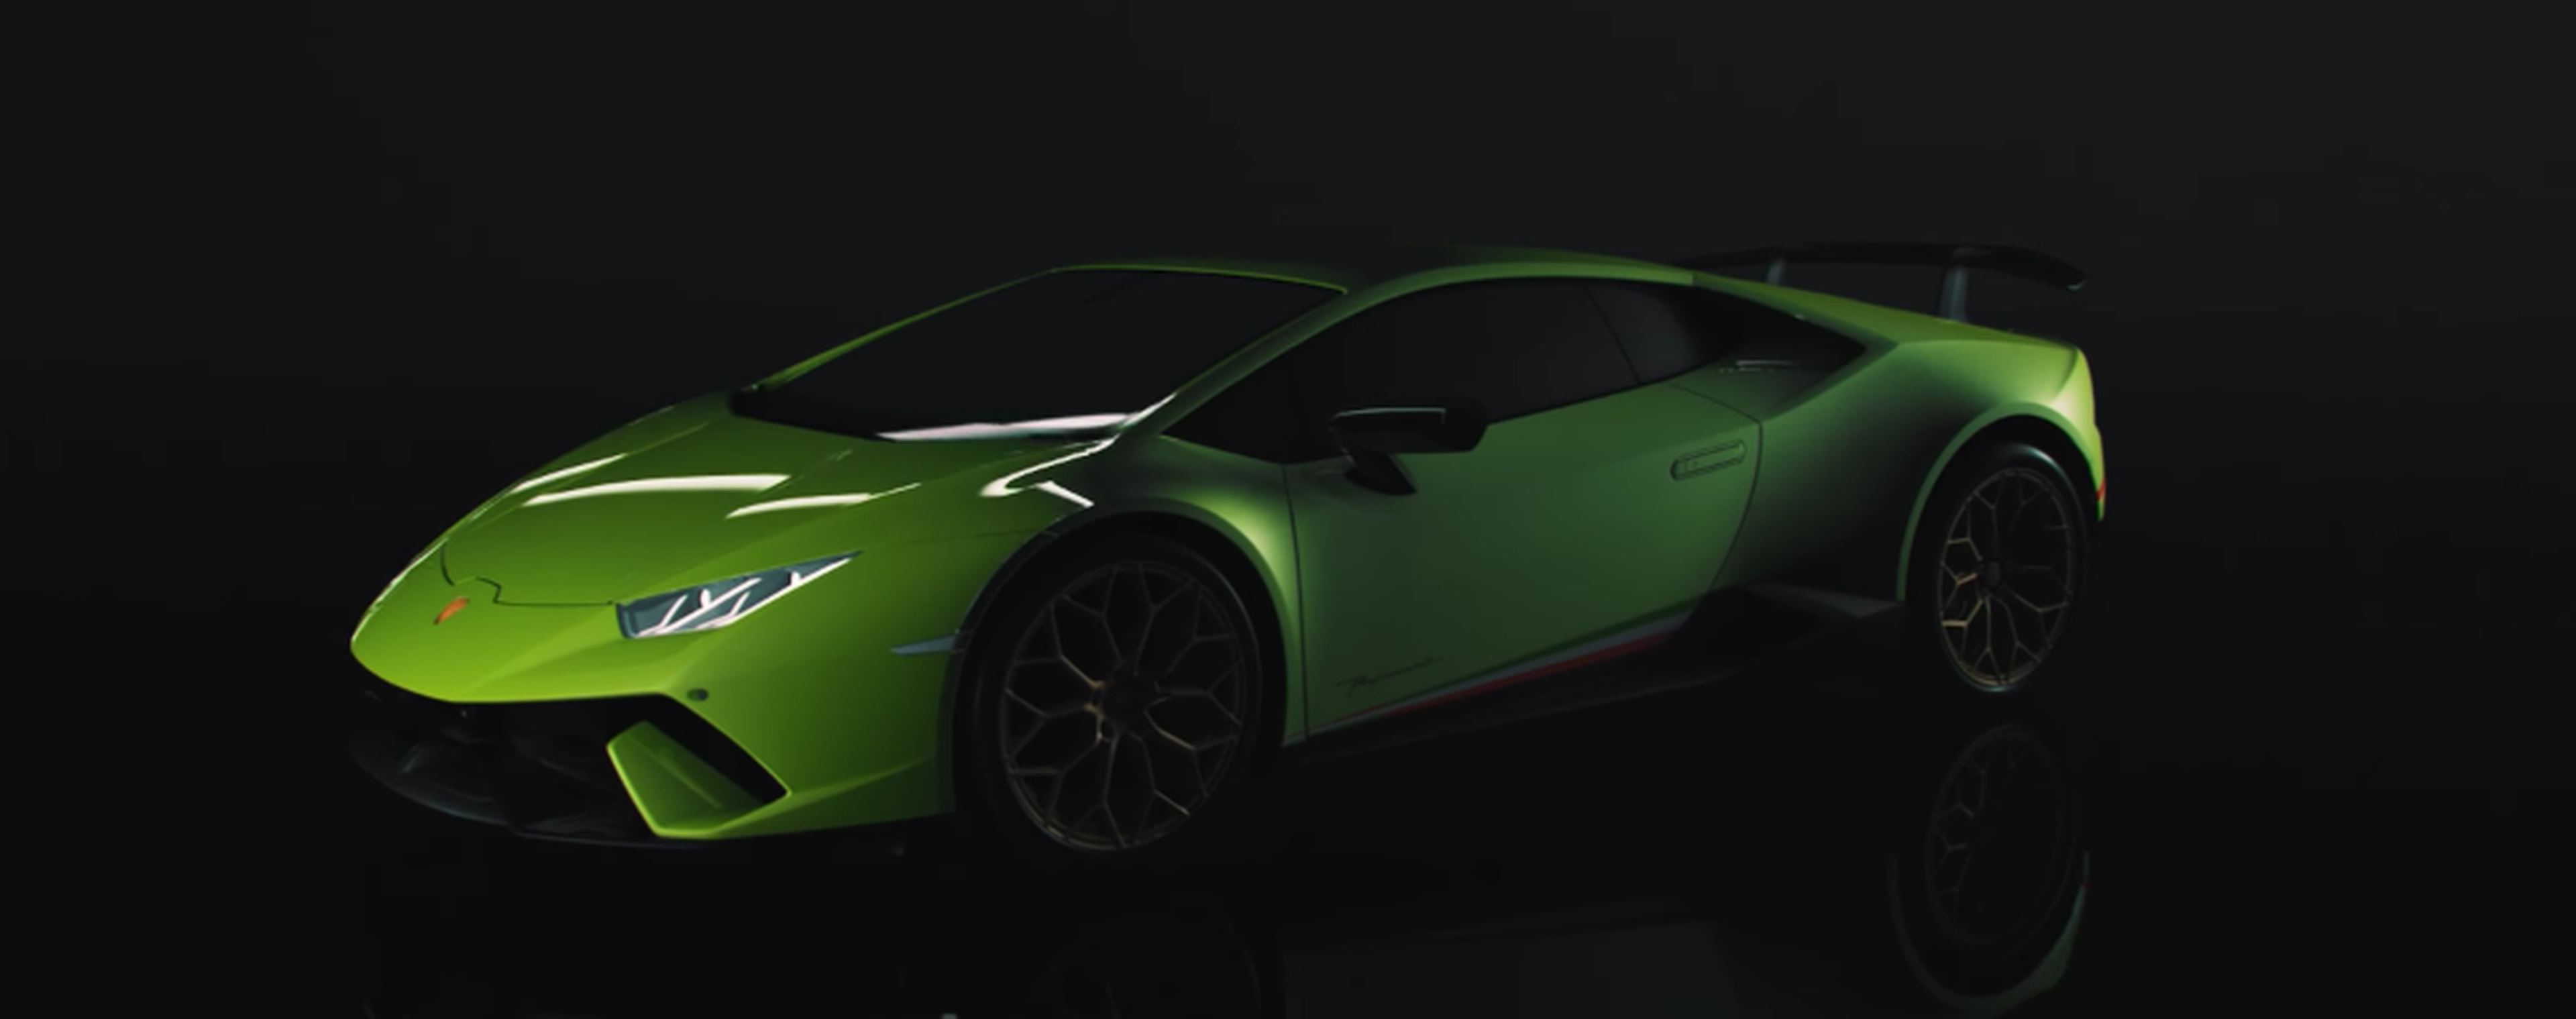 VÍDEO: ¿Cómo funciona el ALA del Lamborghini Huracán Performante?